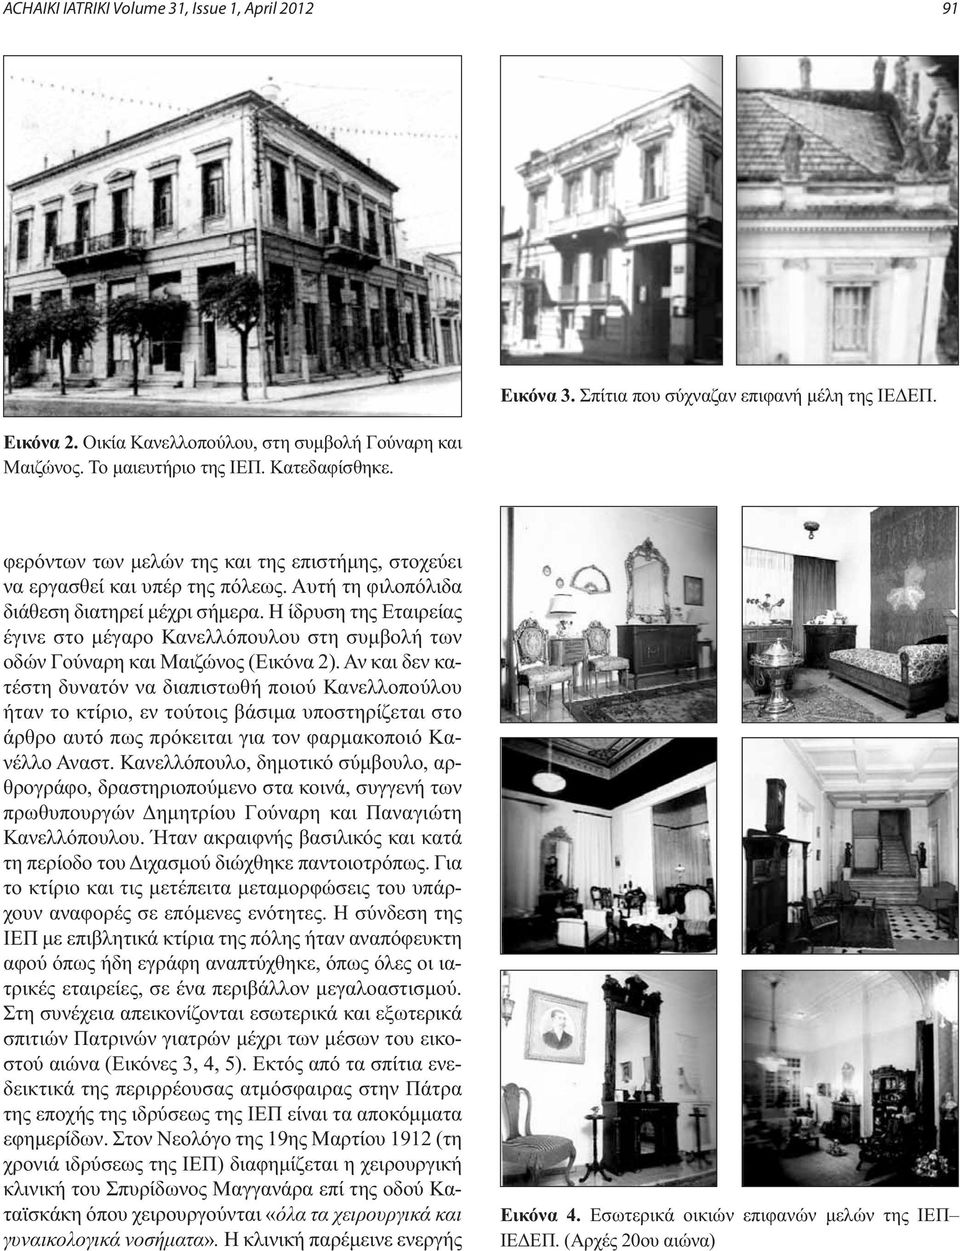 Η ίδρυση της Εταιρείας έγινε στο μέγαρο Κανελλόπουλου στη συμβολή των οδών Γούναρη και Μαιζώνος (Εικόνα 2).